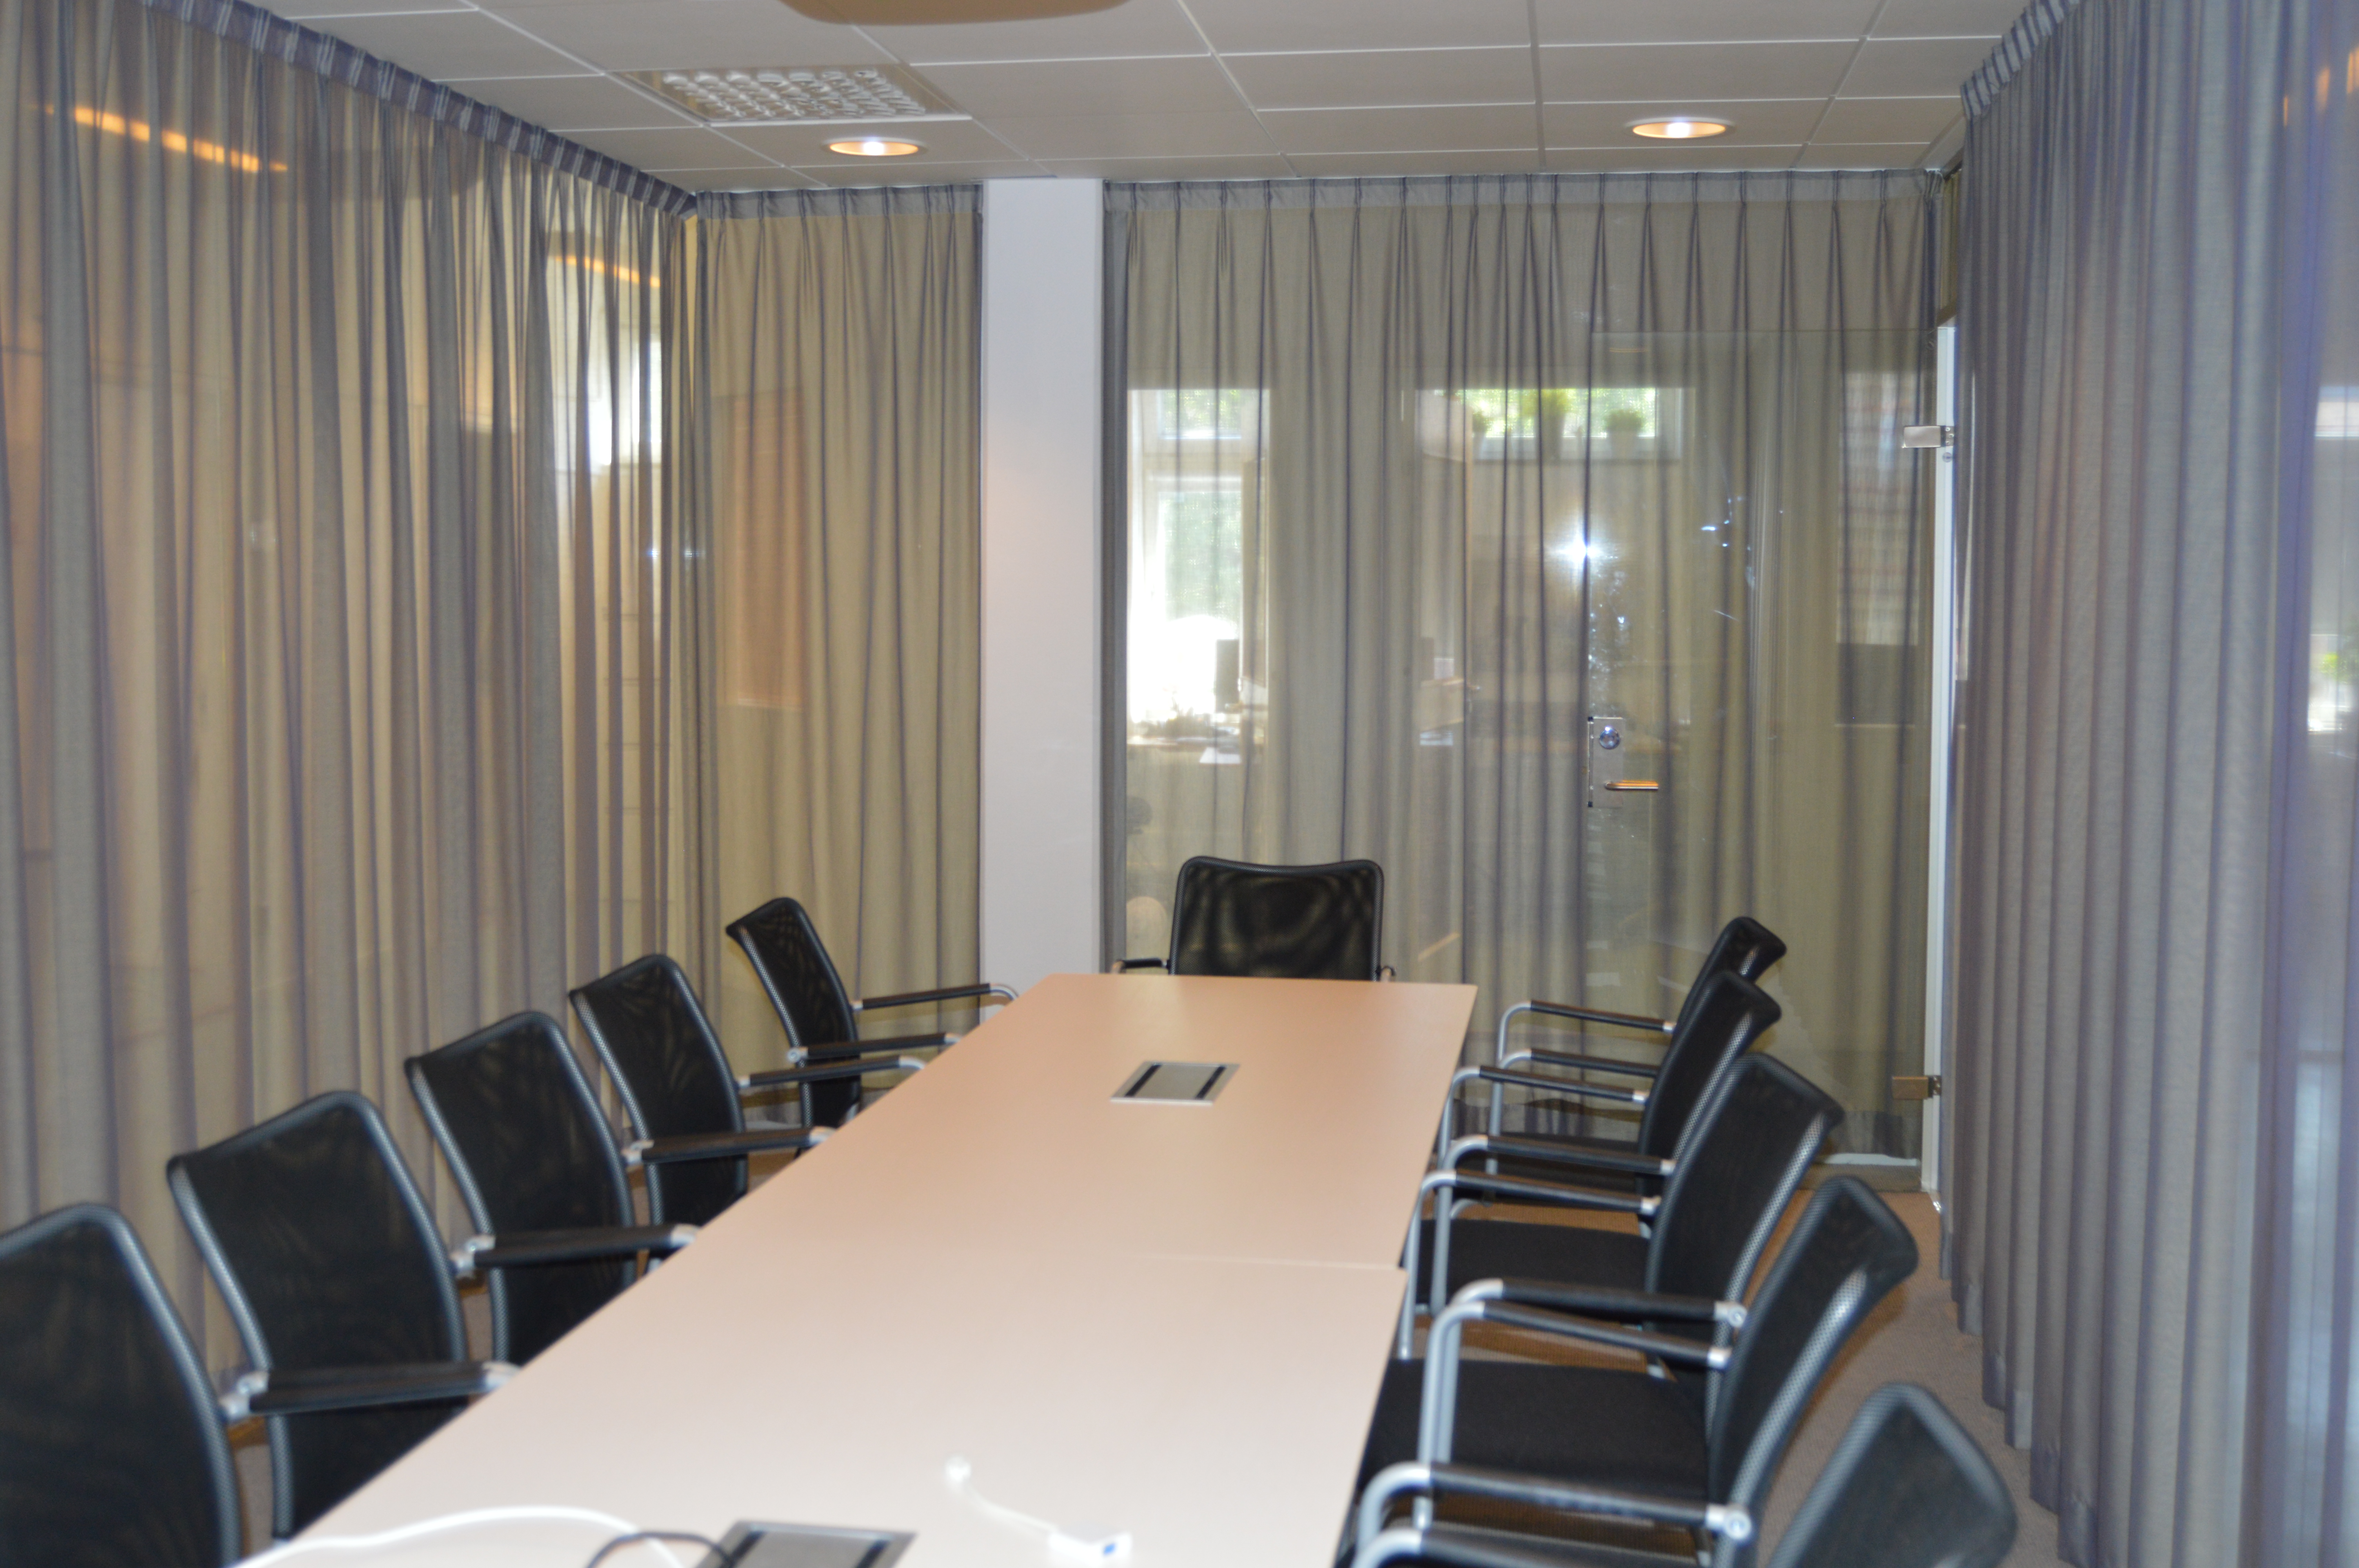 Konferensrum med stort konferensbord och plats för över tio personer.